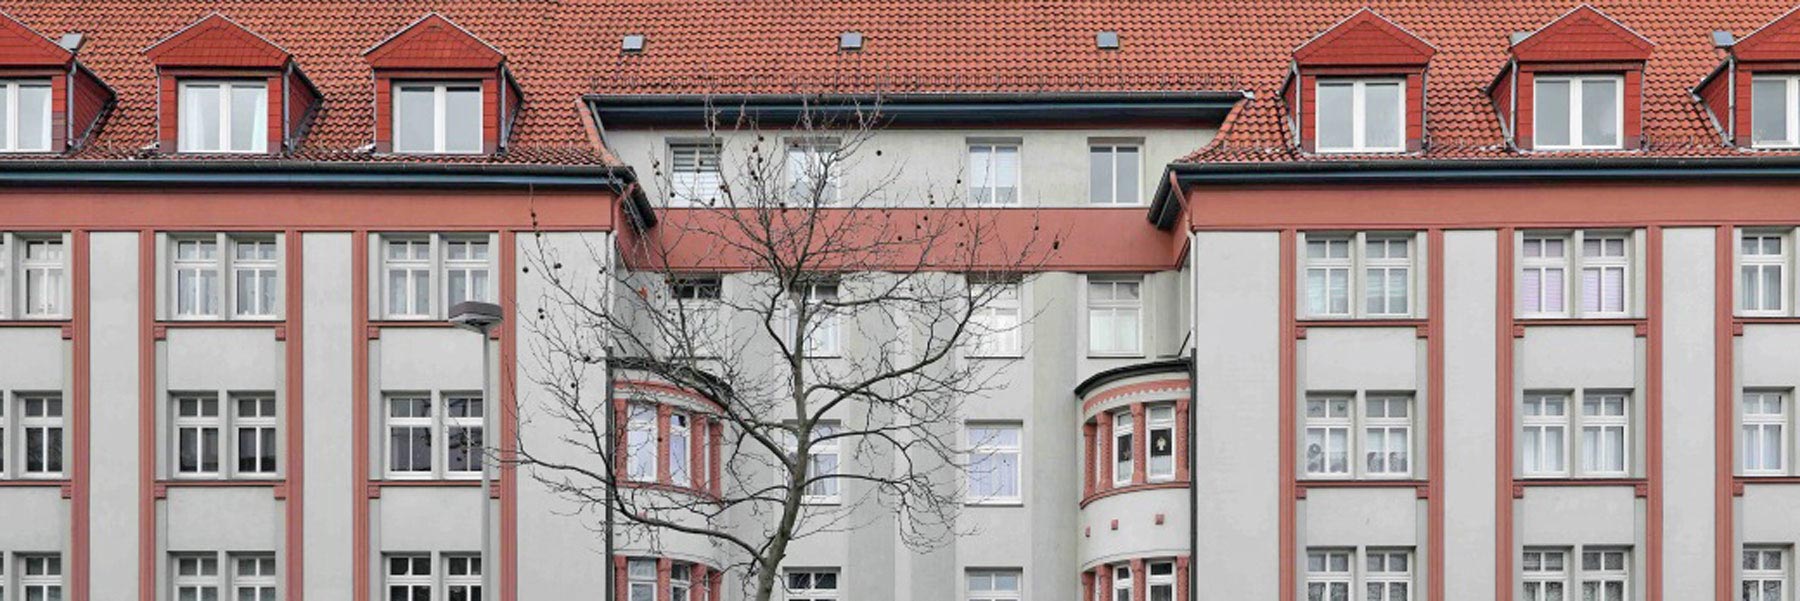 Denkmalgerechte und energetische Fassadensanierung des Brüggemannhofes, Hannover 